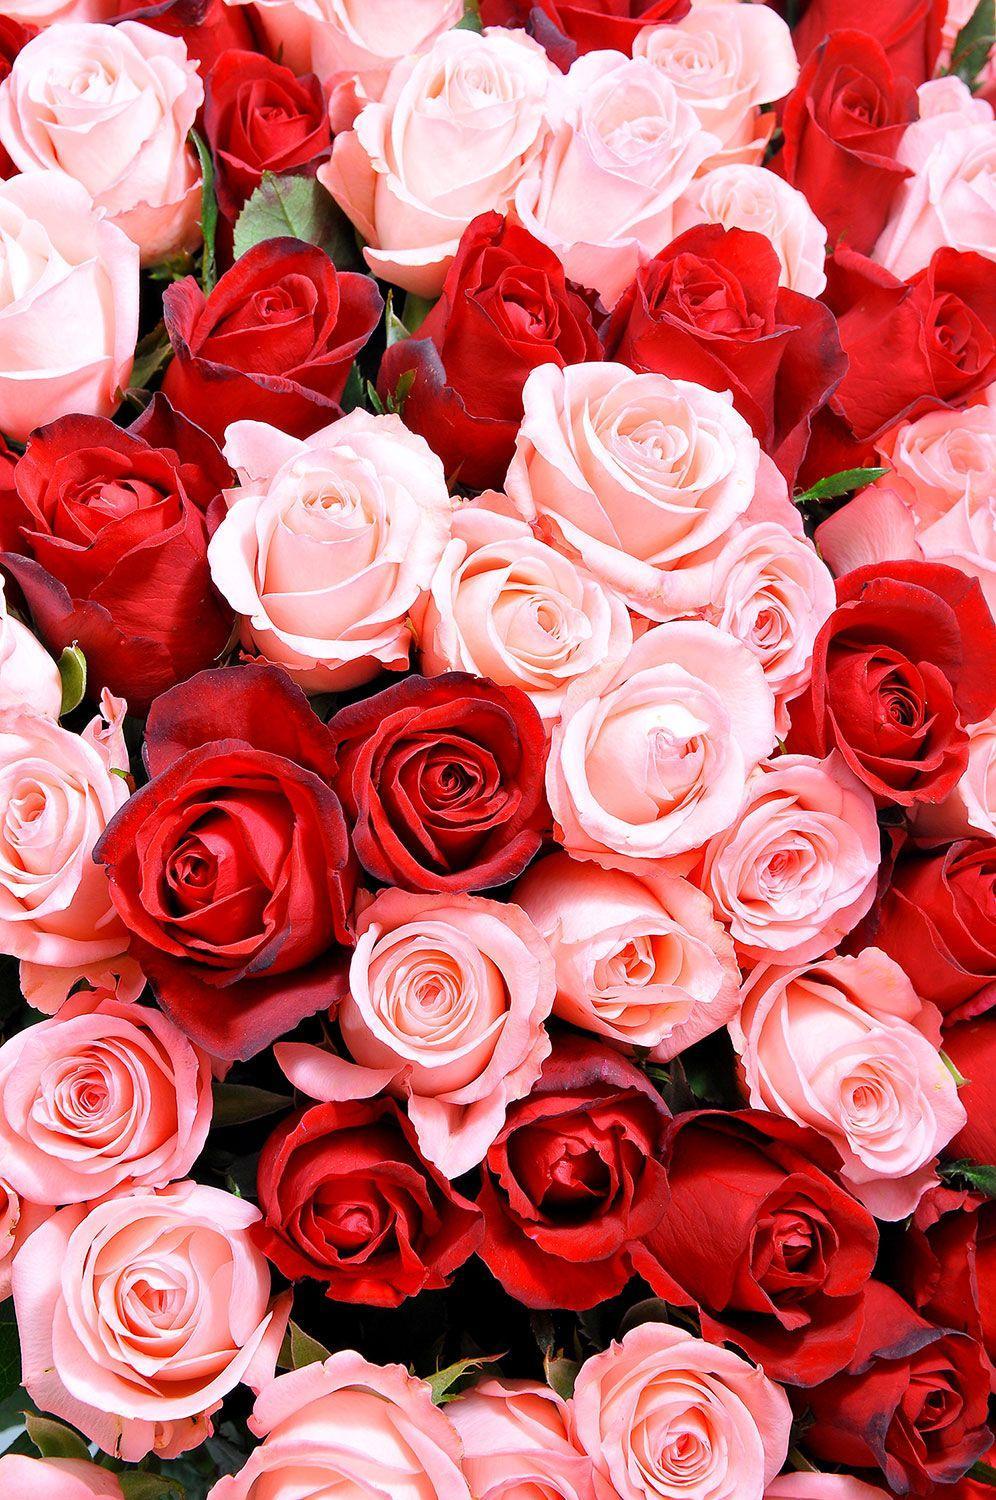 Hình nền hoa hồng trắng và hồng là điều mà bạn không thể bỏ lỡ. Kết hợp giữa hai màu sắc tinh tế này, các bông hoa hồng đẹp tuyệt vời sẽ tạo nên một không gian trang nhã, lãng mạn cho điện thoại của bạn.